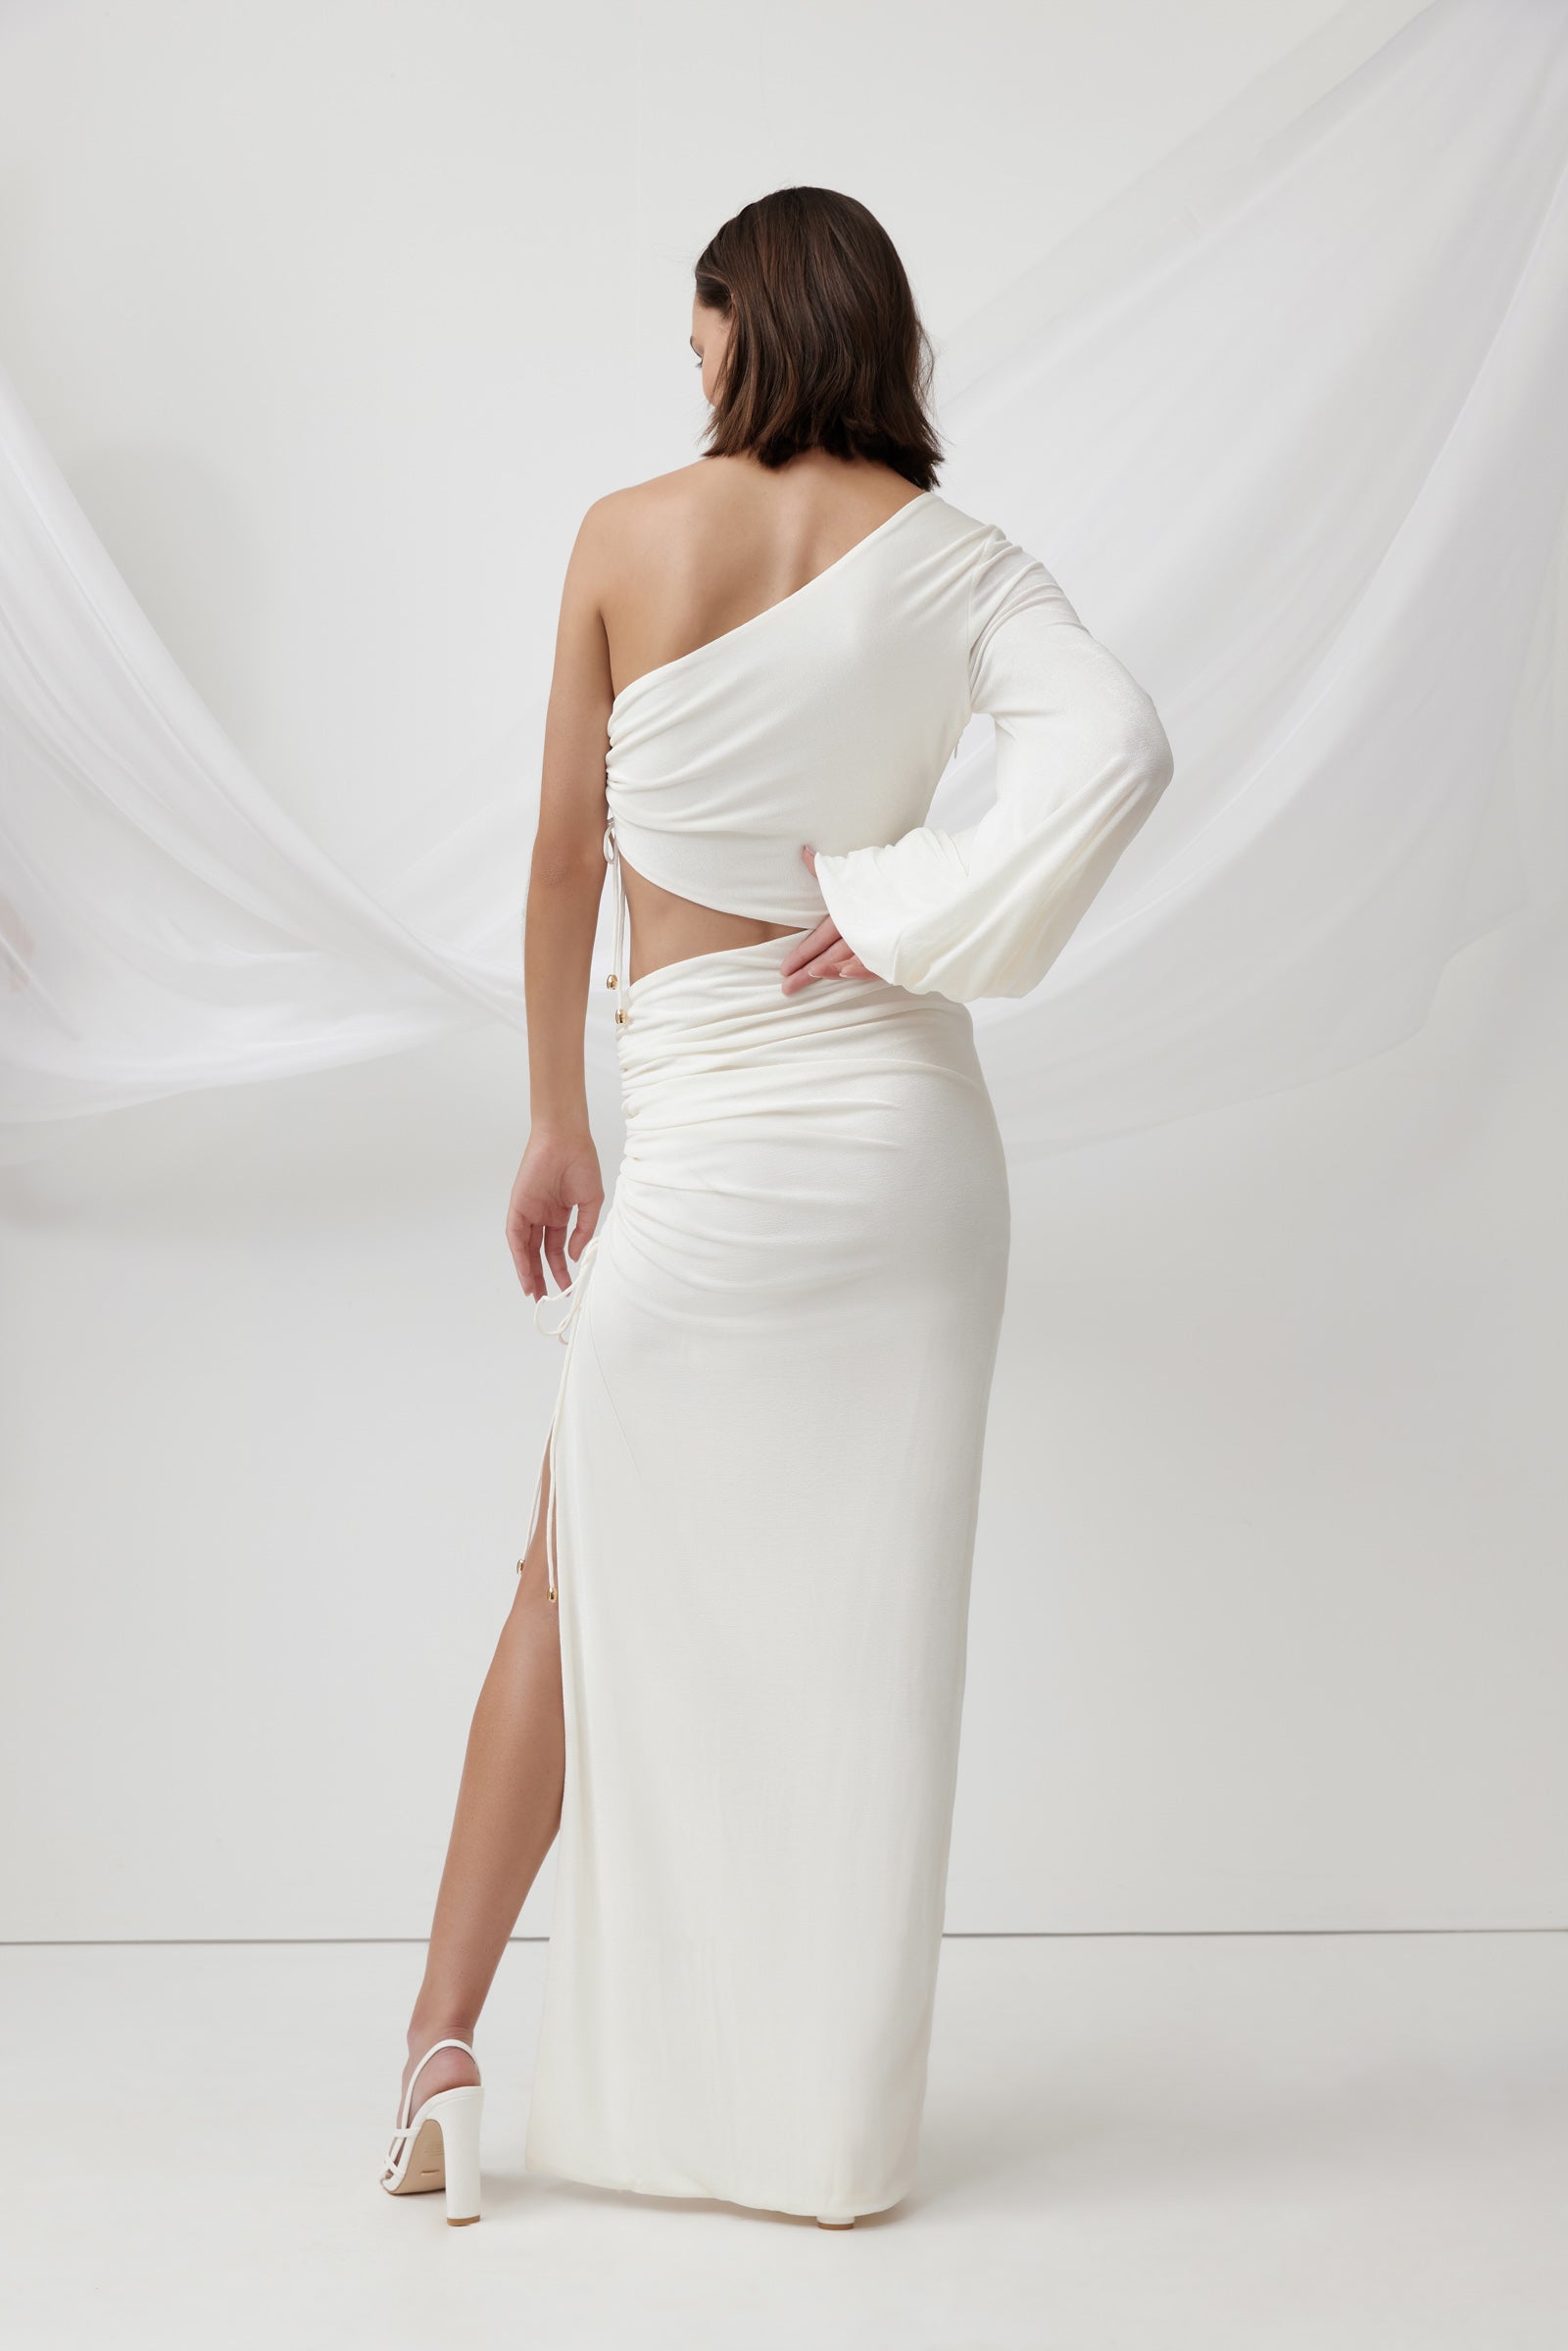 Rush Dress - White